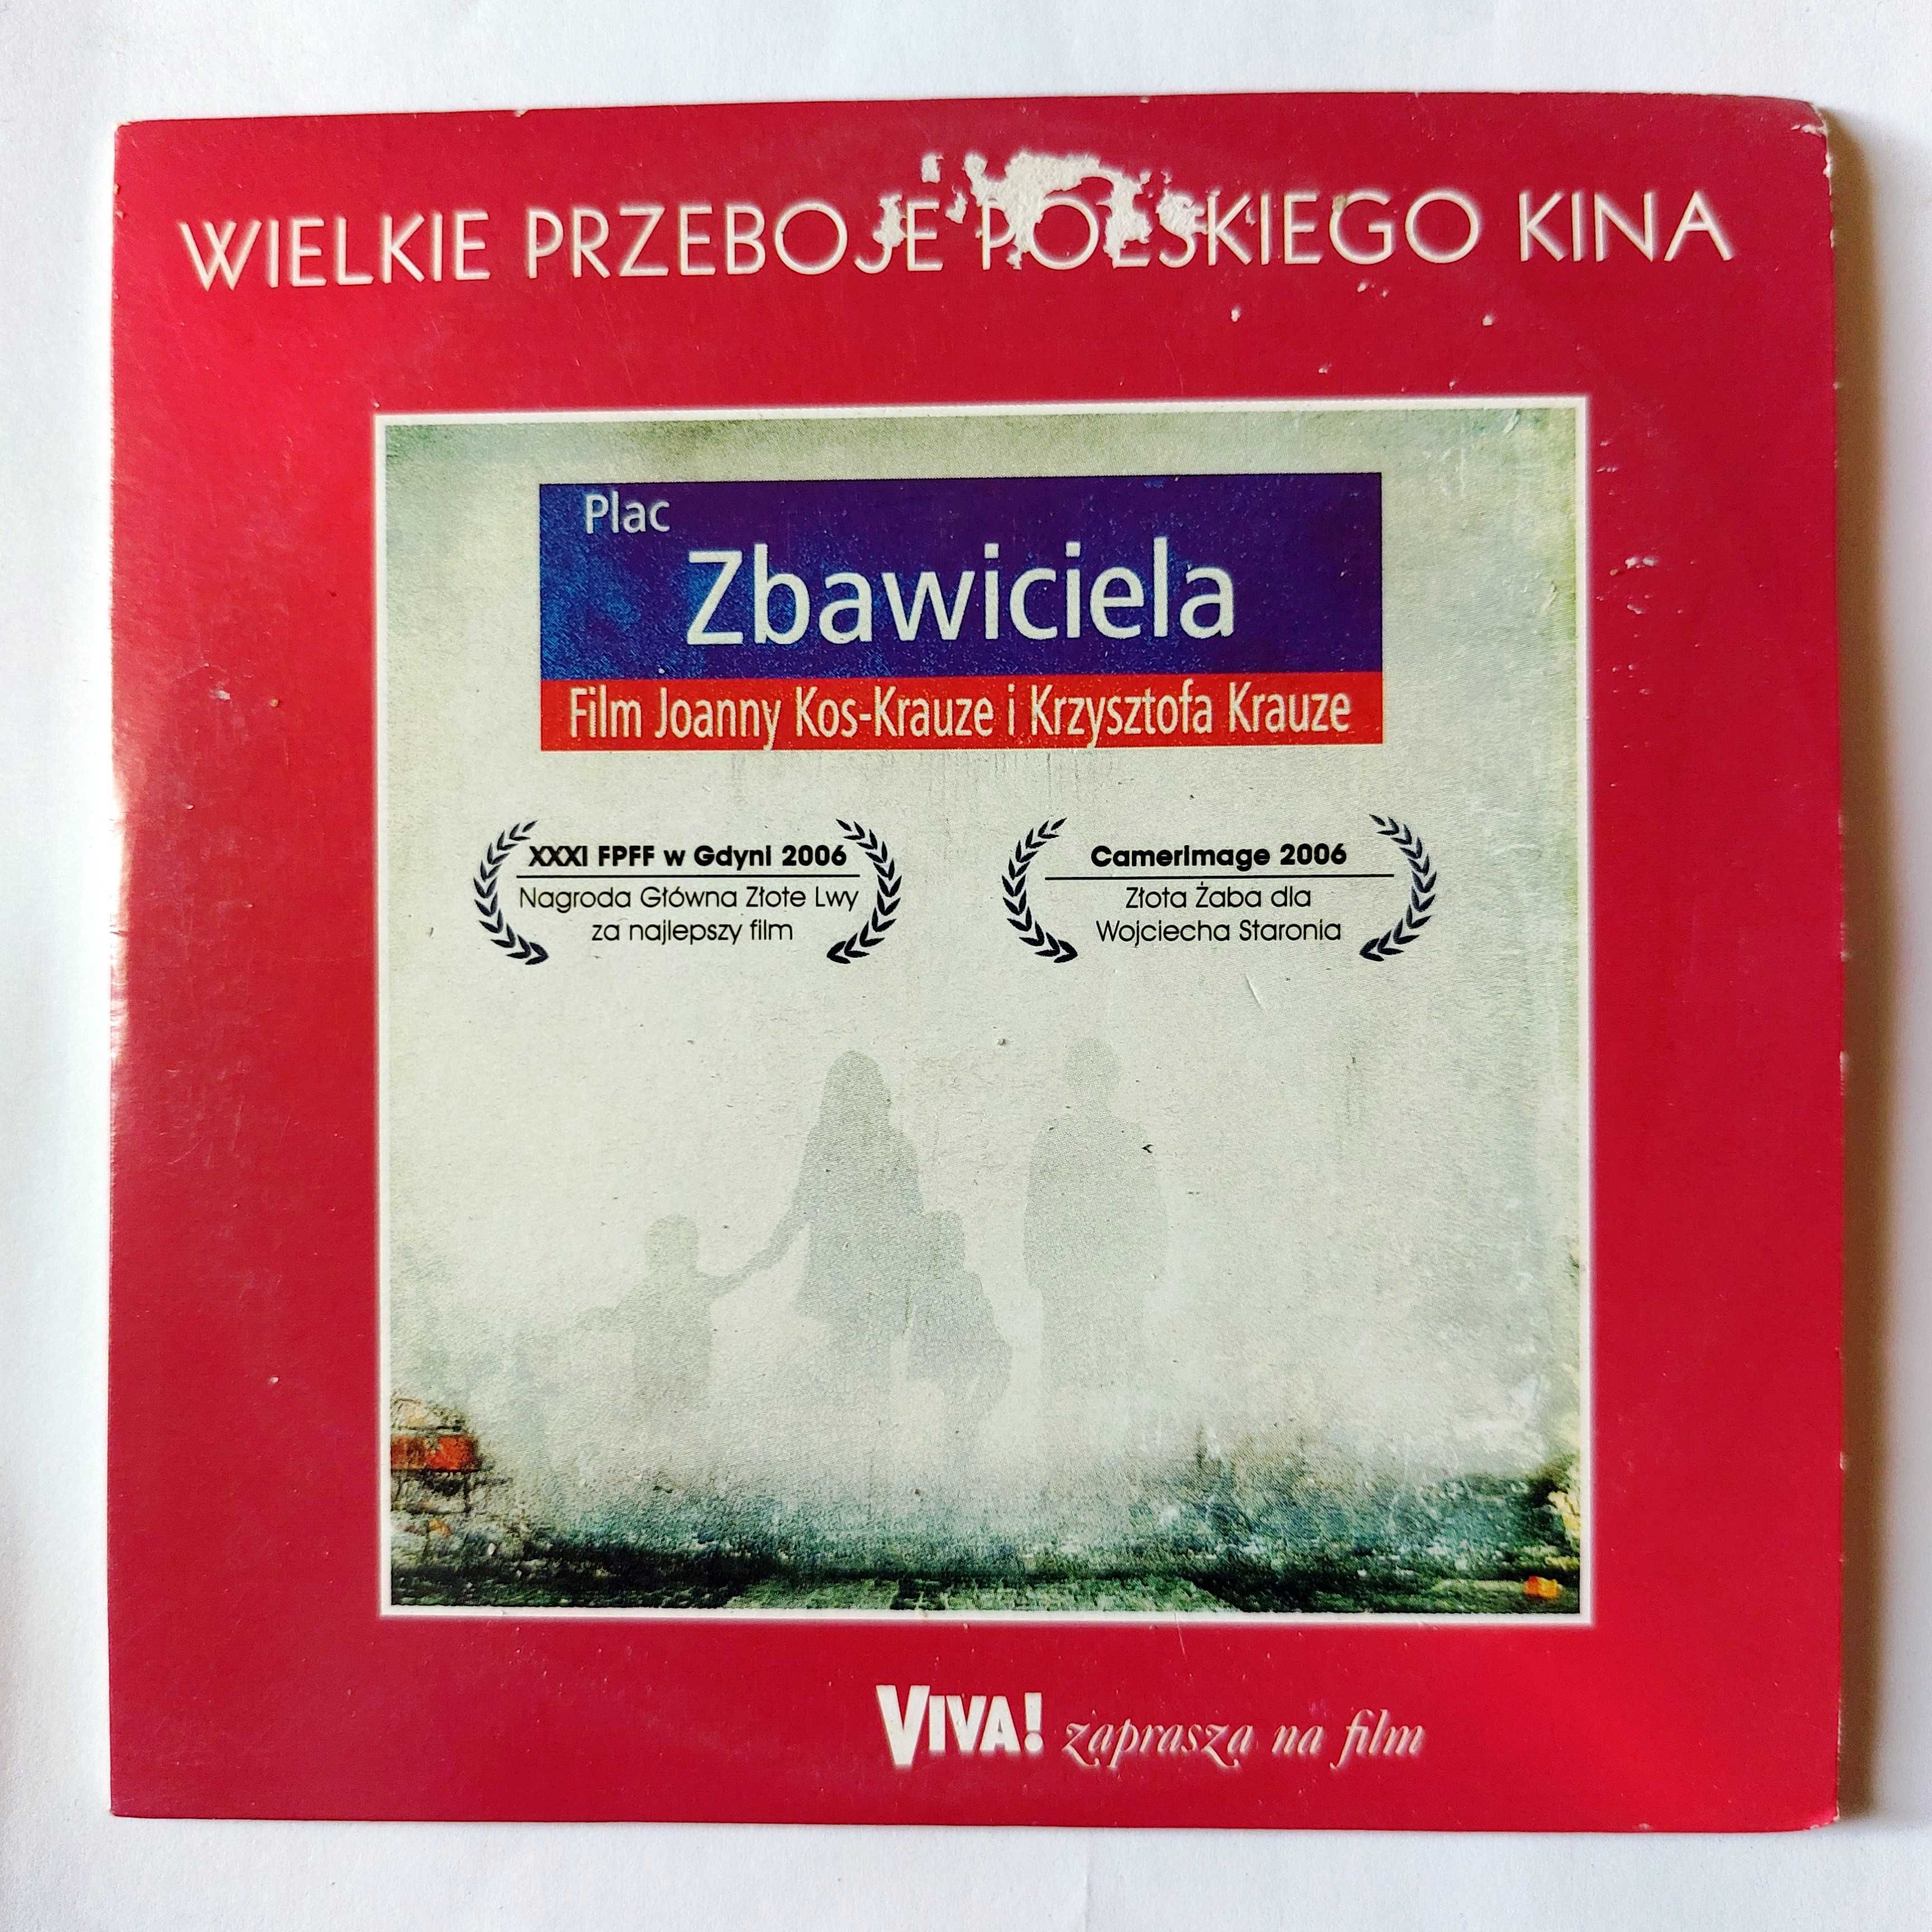 PLAC ZBAWICIELA | polski film na płycie DVD